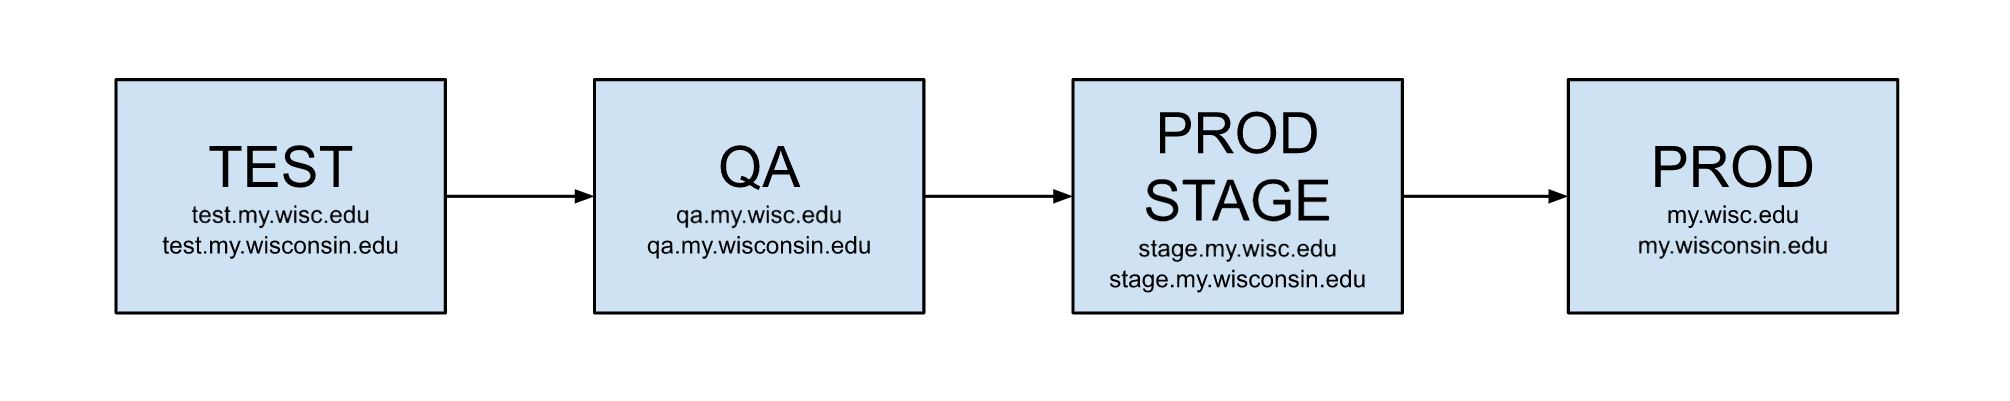 MyUW tiers include Test (e.g. test.my.wisc.edu), QA (e.g. qa.my.wisc.edu), Prod Stage, and Production